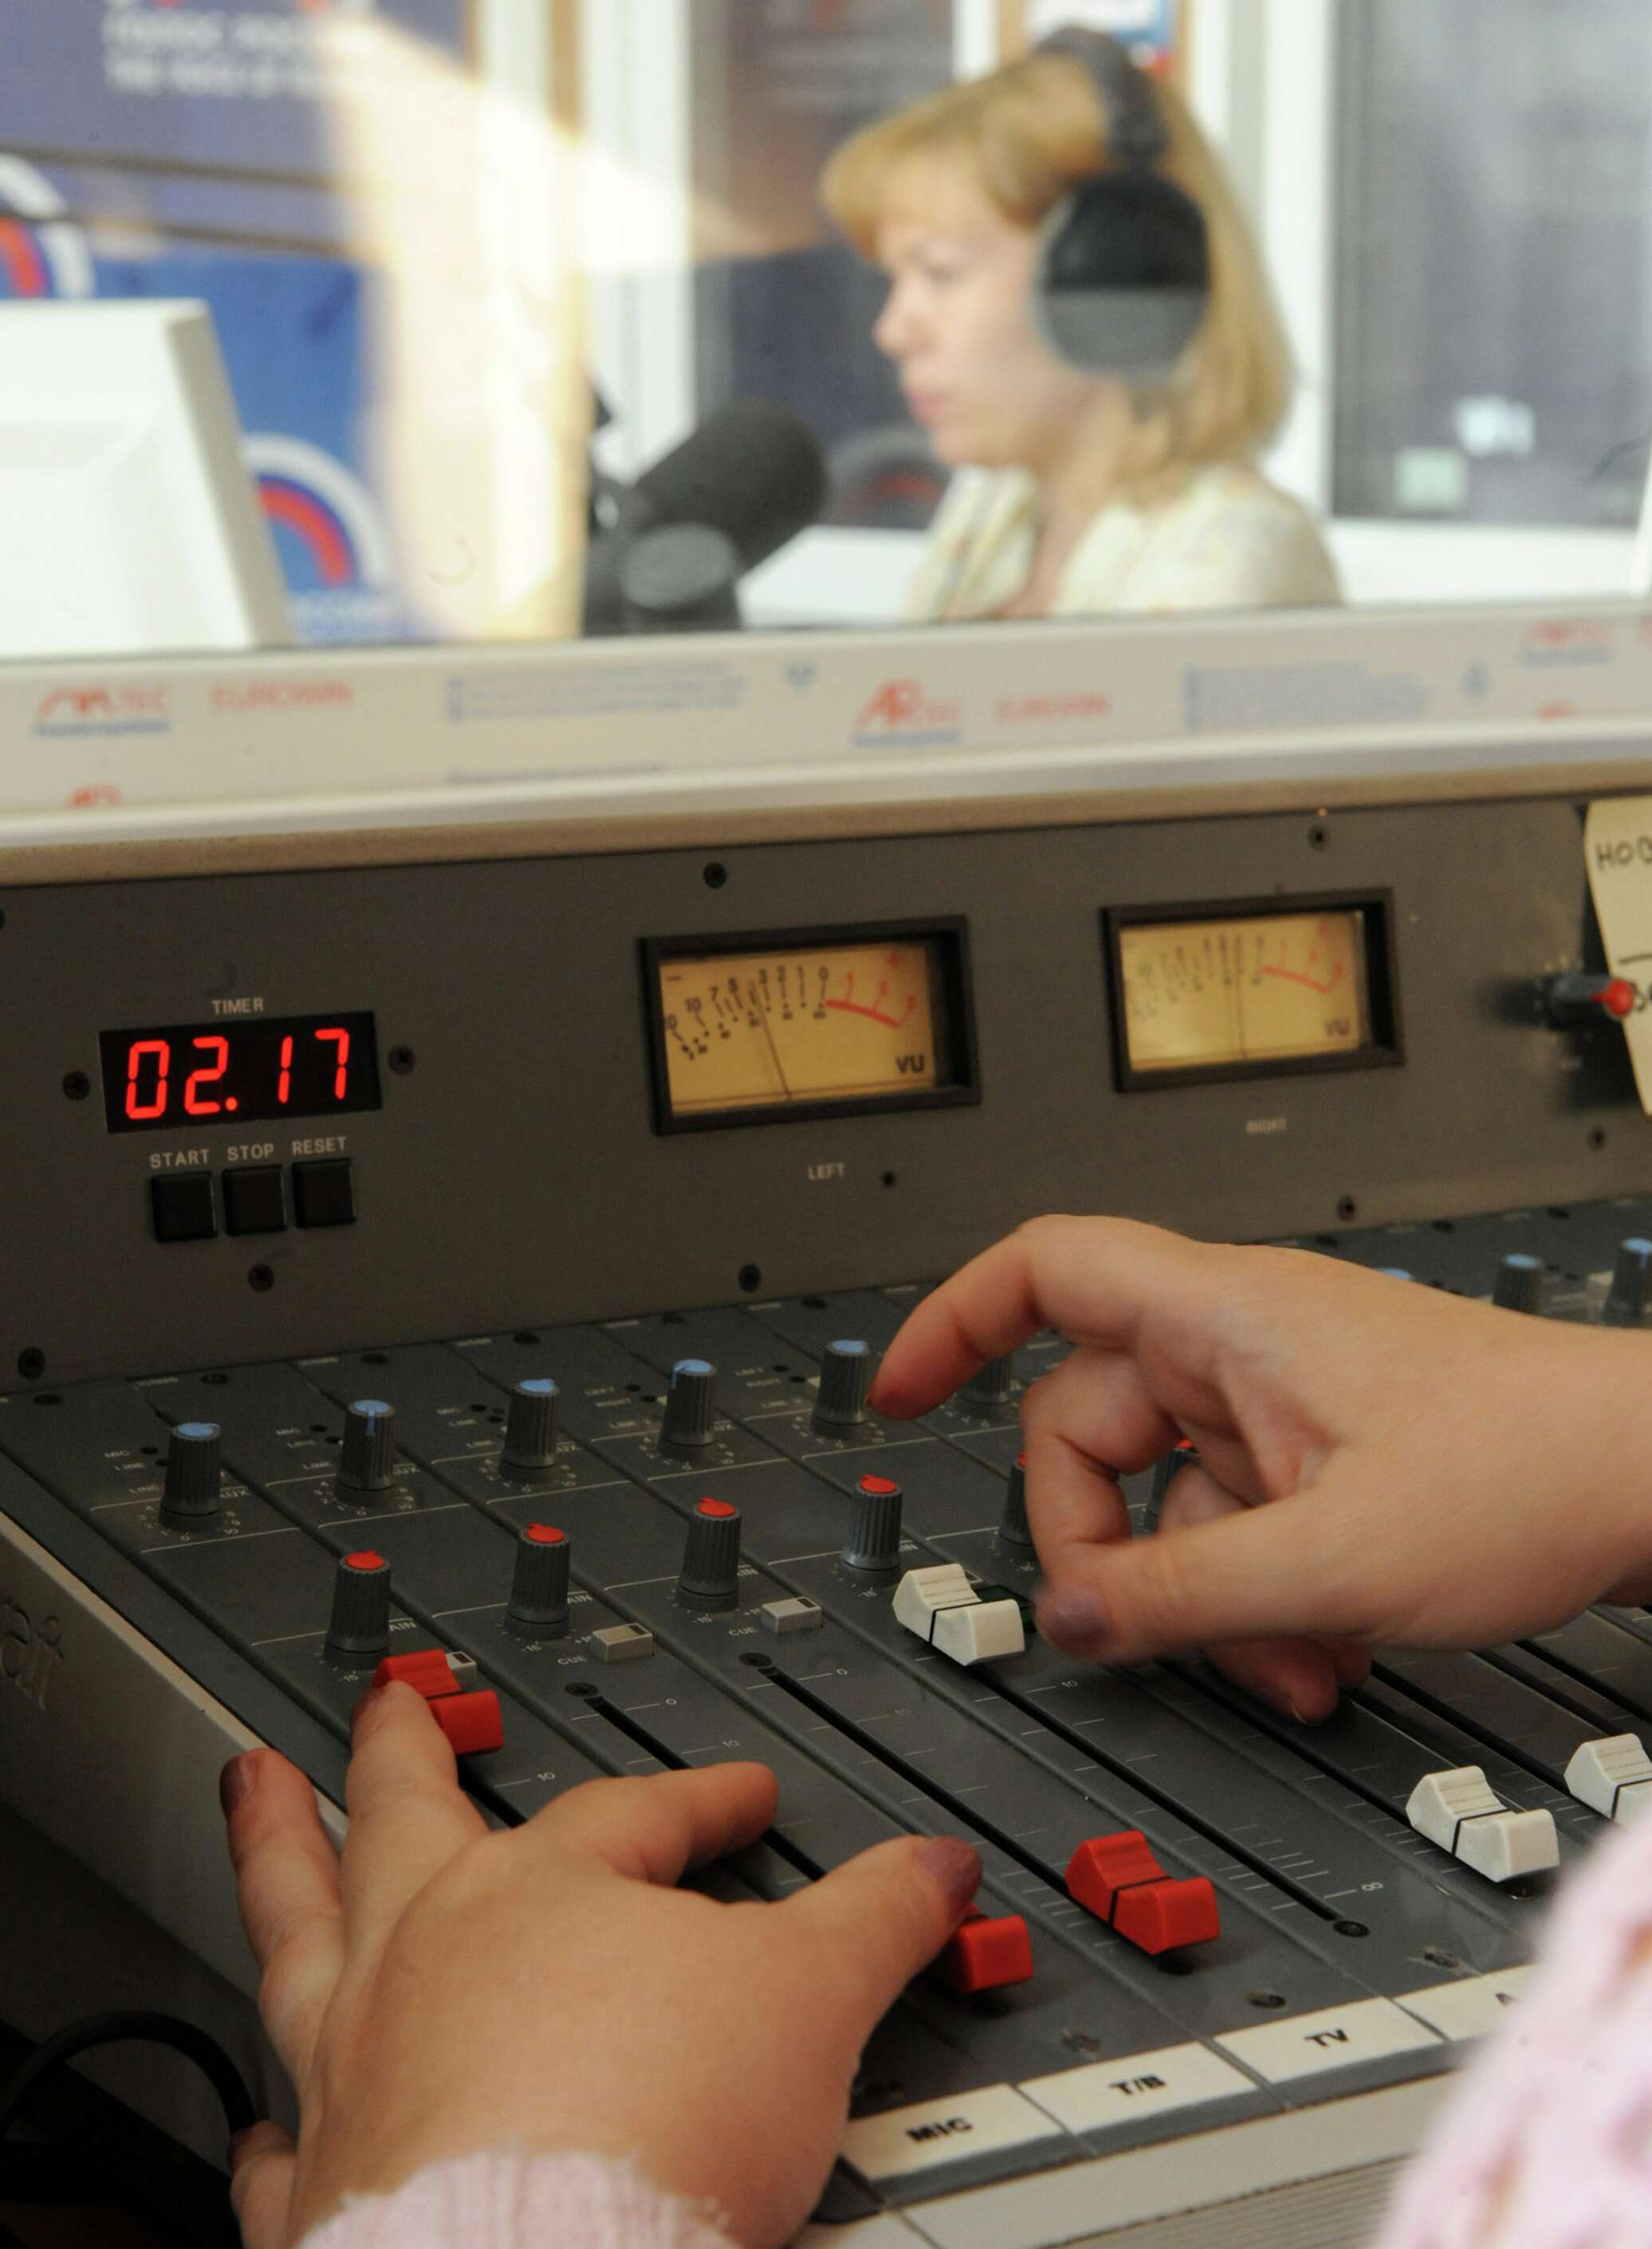 Русское радио начало вещания